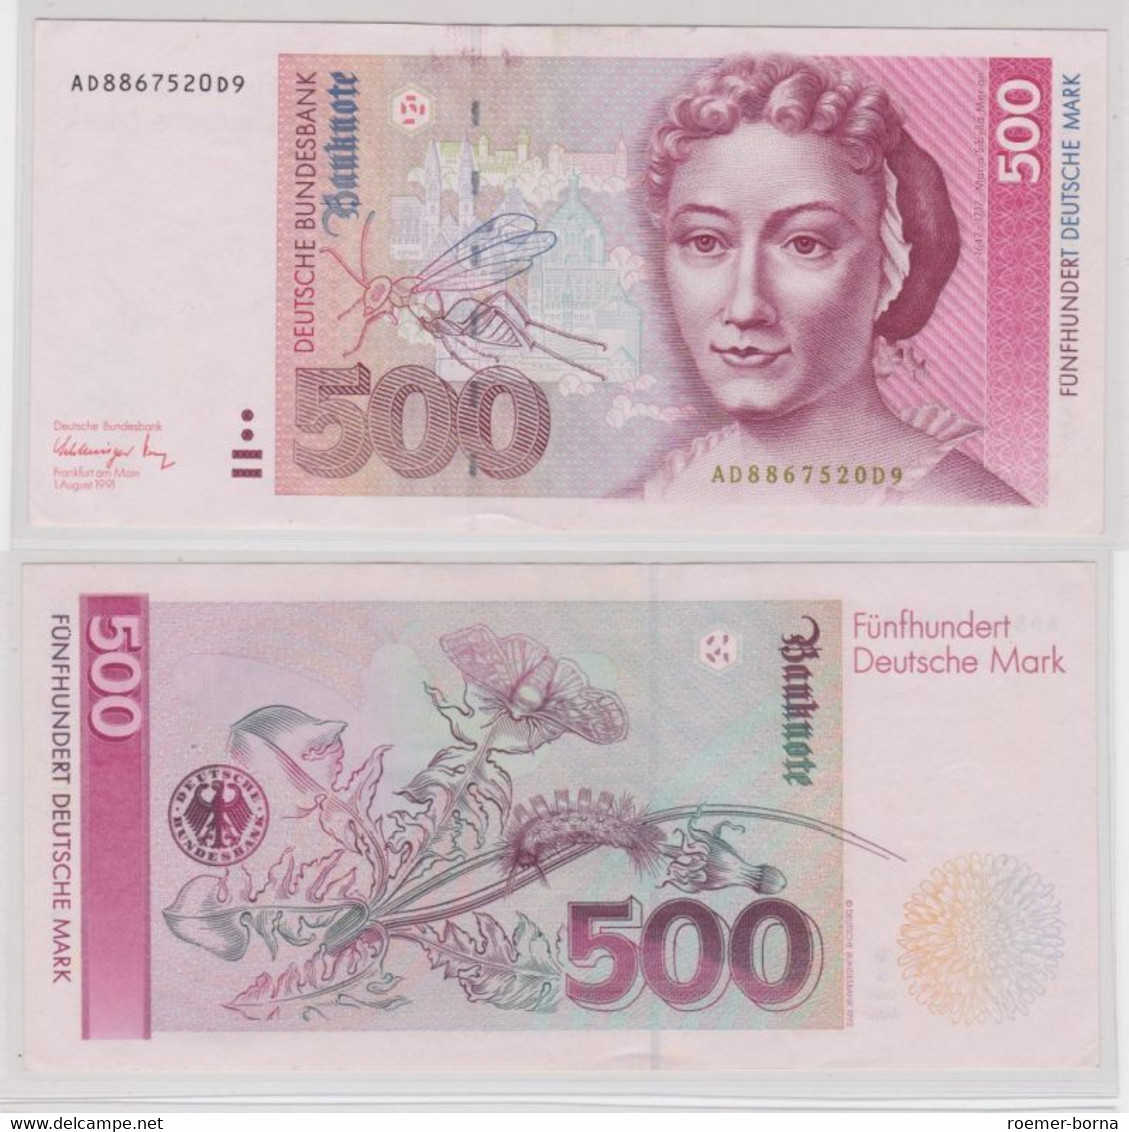 T140673 Banknote 500 DM Deutsche Mark Ro. 301a Schein 1.8.1991 KN AD 8867520 D9 - 500 Deutsche Mark